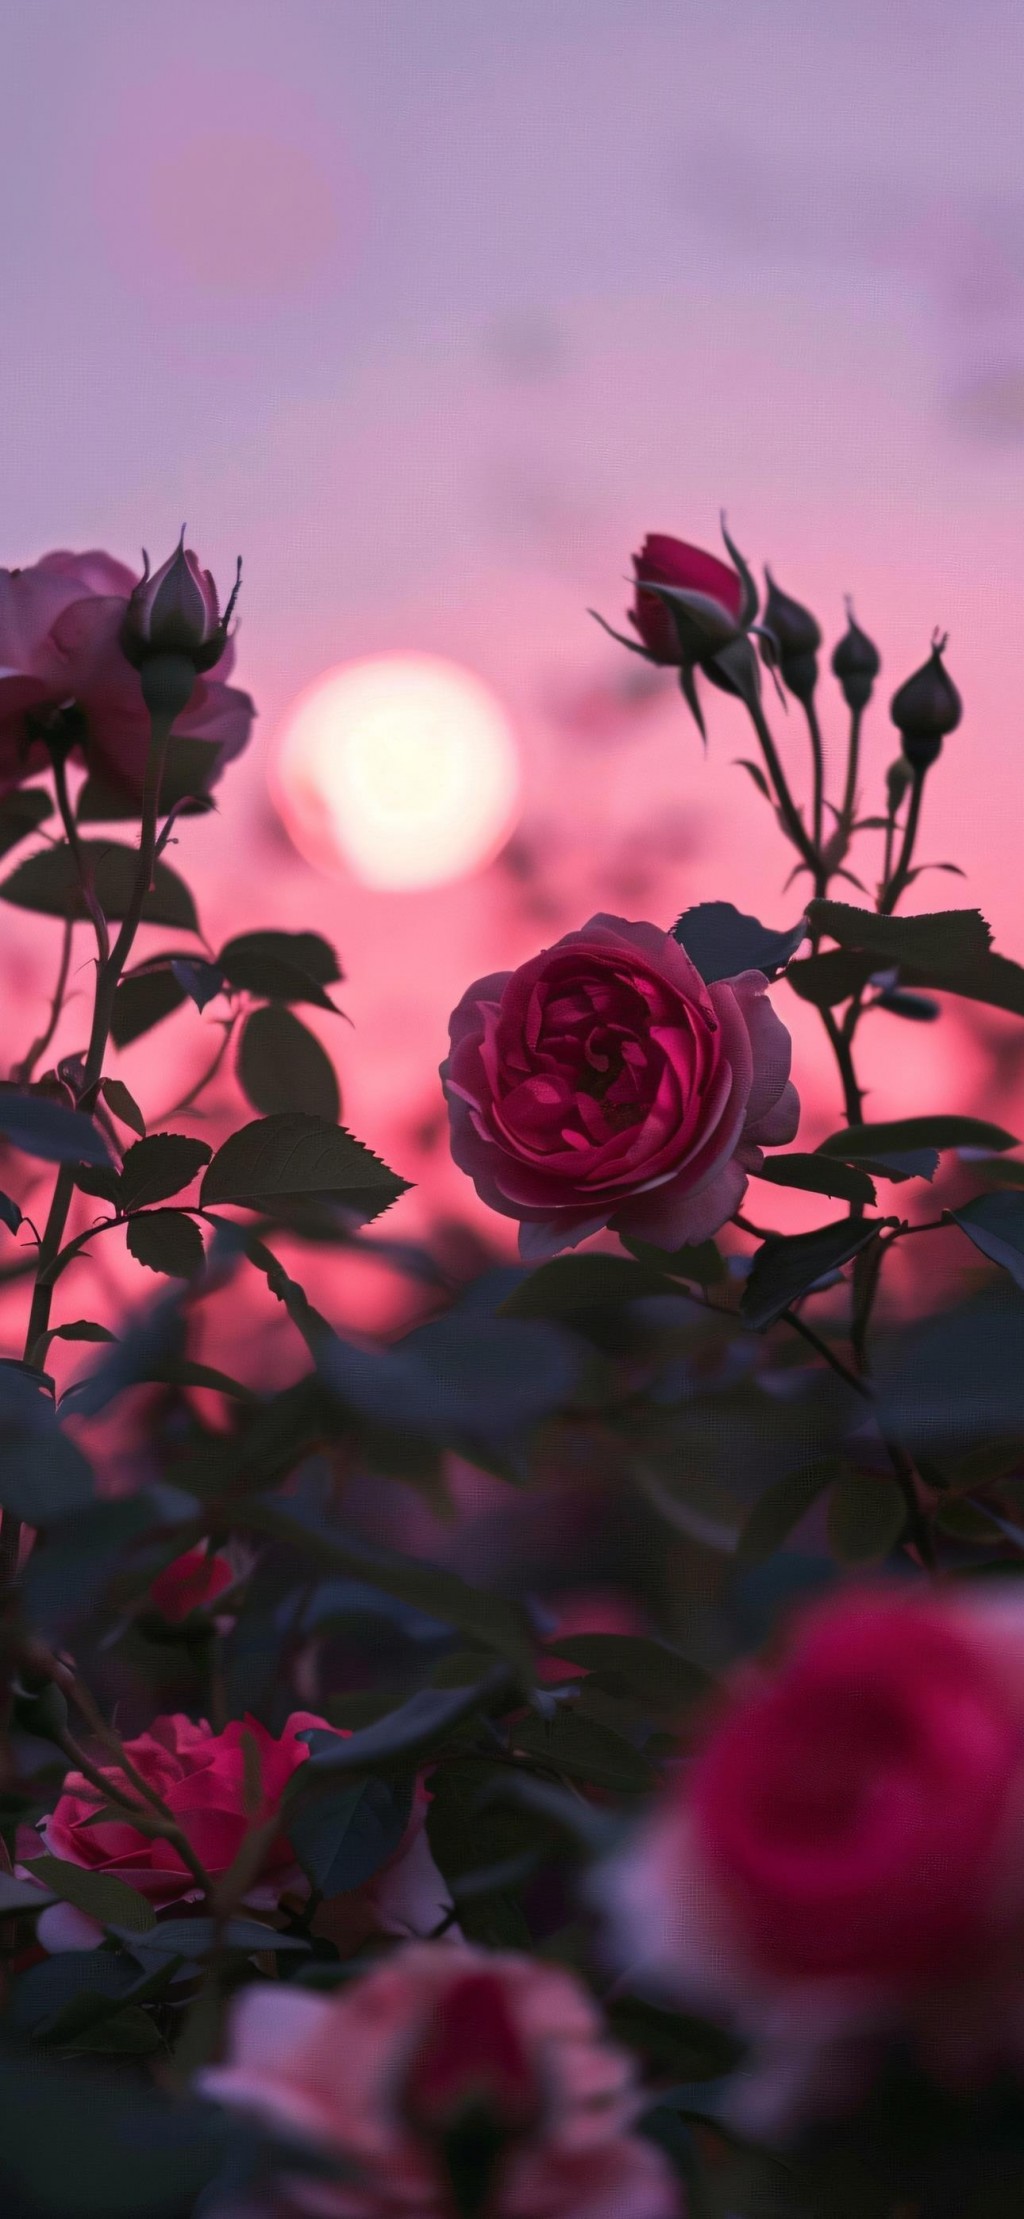 粉色玫瑰花唯美浪漫手机壁纸